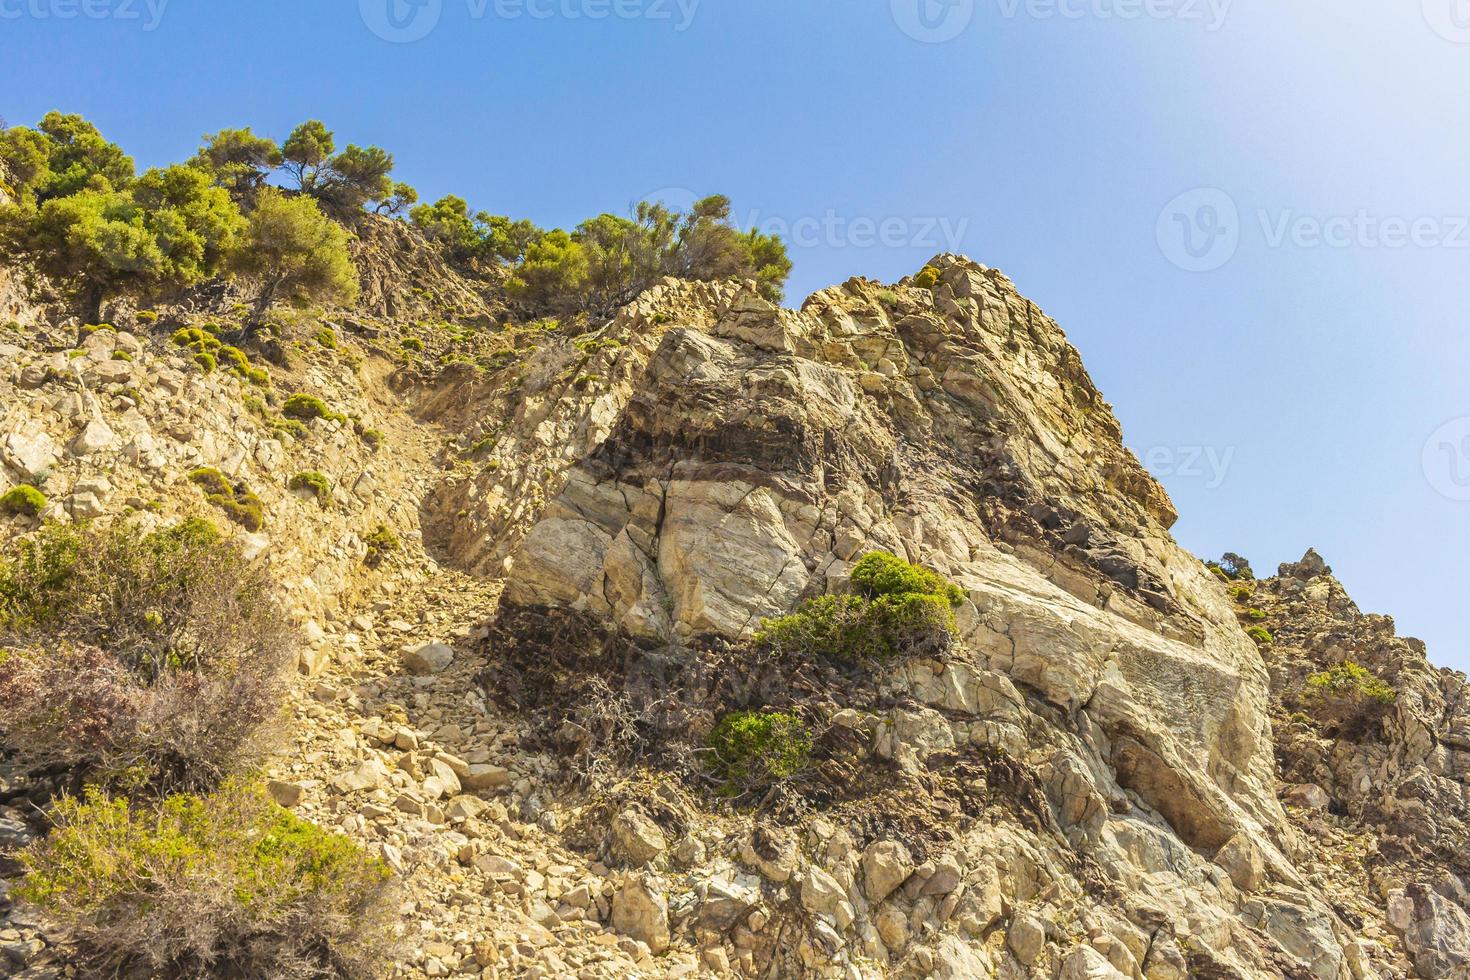 paesaggi naturali ruvidi sull'isola di kos grecia montagne scogliere rocce. foto